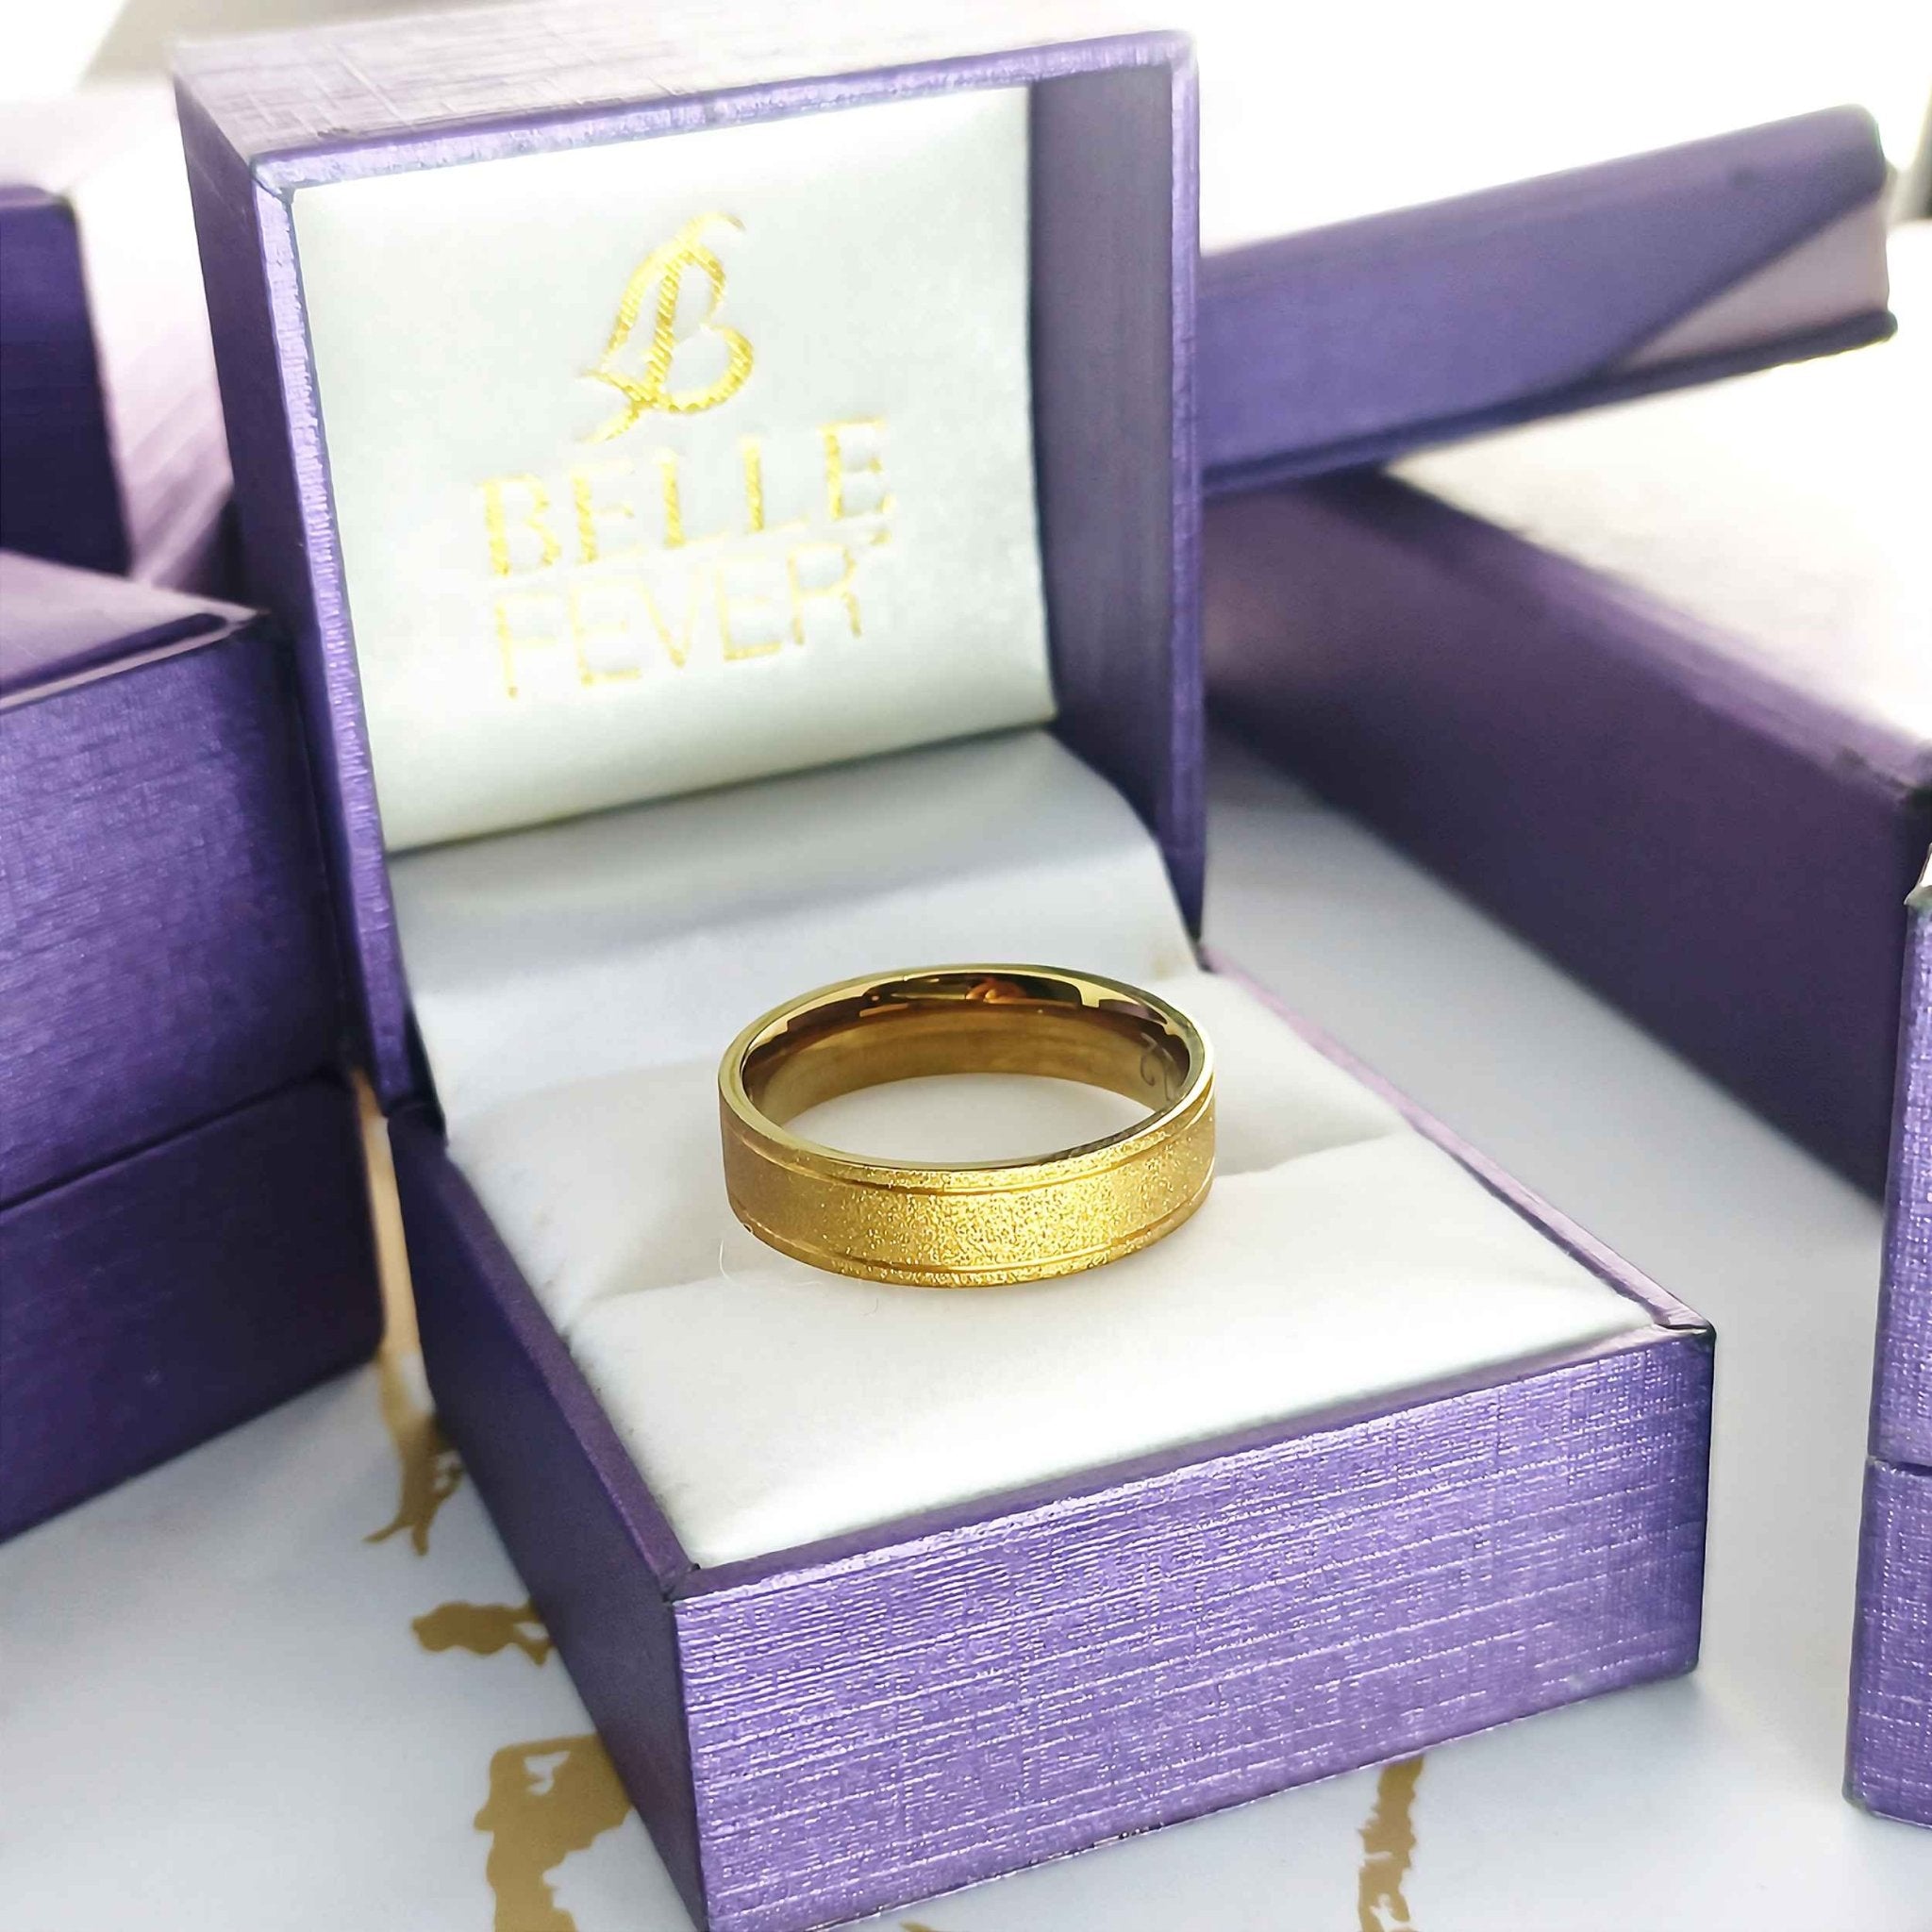 Sparkling Love Ring - Rings by Belle Fever